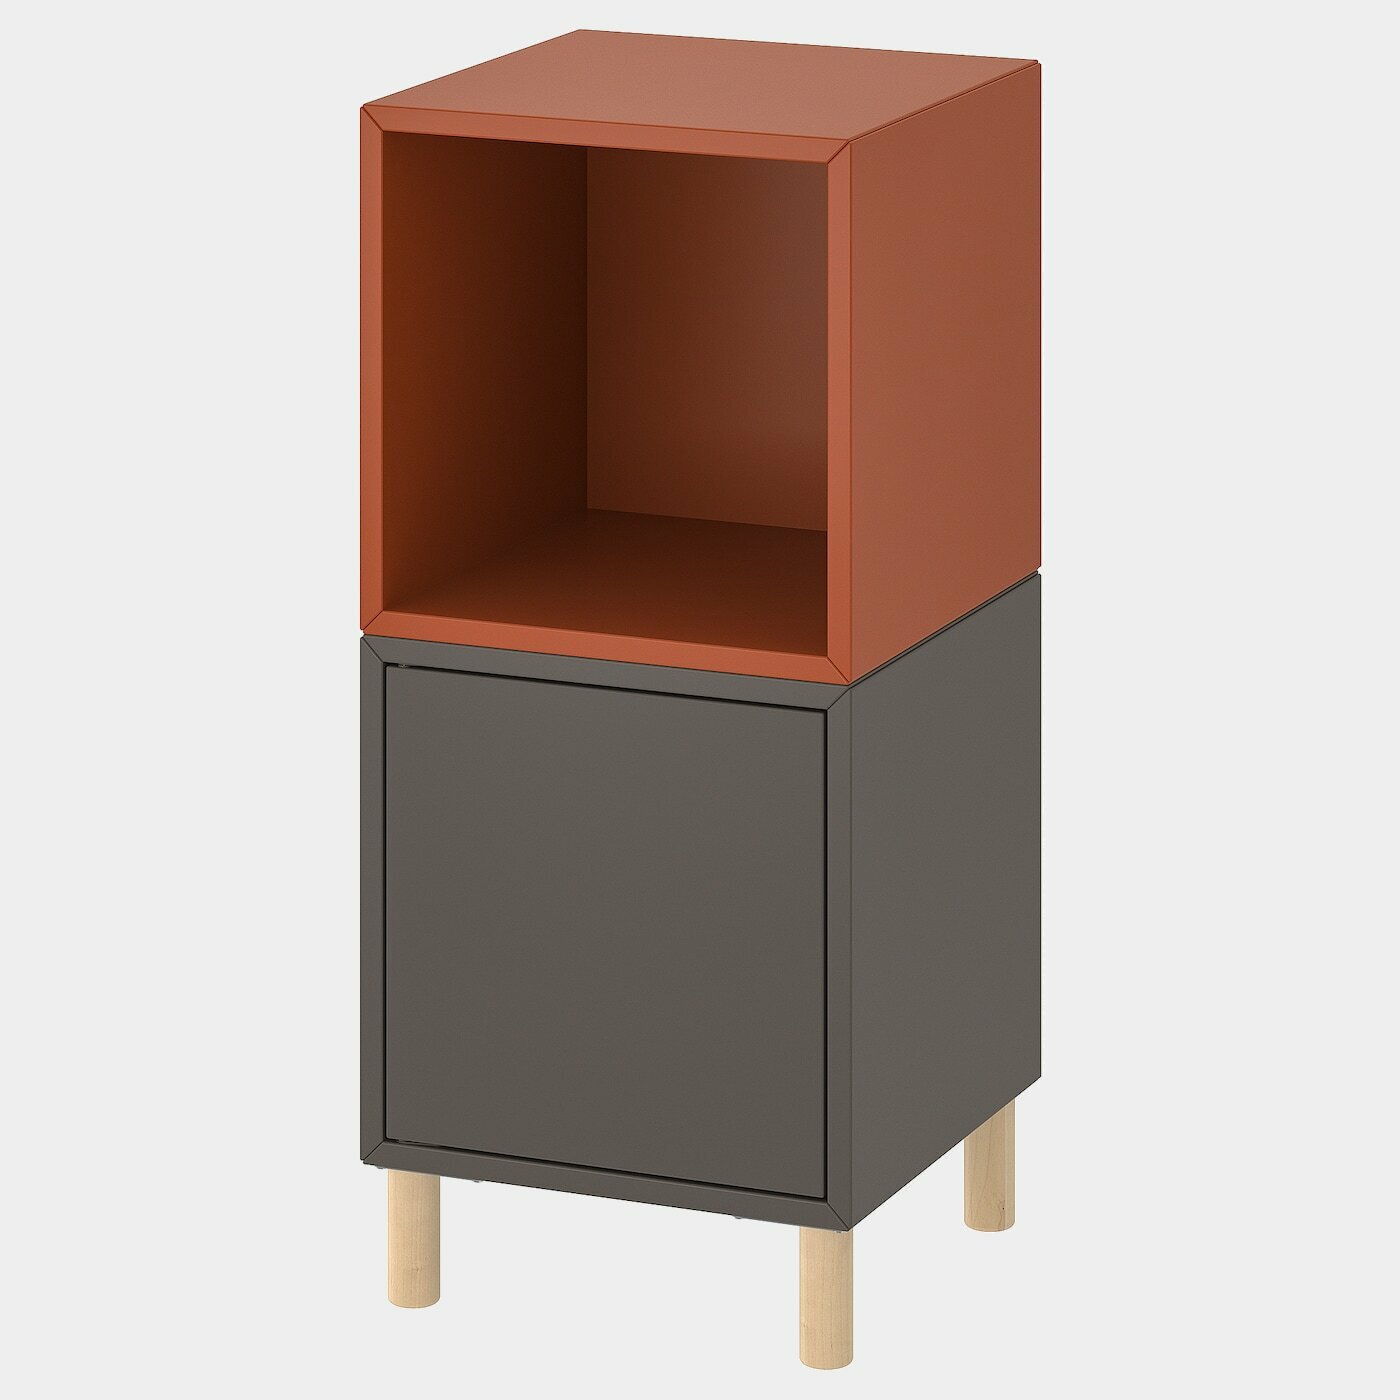 EKET Schrankkombination/Beine  -  - Möbel Ideen für dein Zuhause von Home Trends. Möbel Trends von Social Media Influencer für dein Skandi Zuhause.